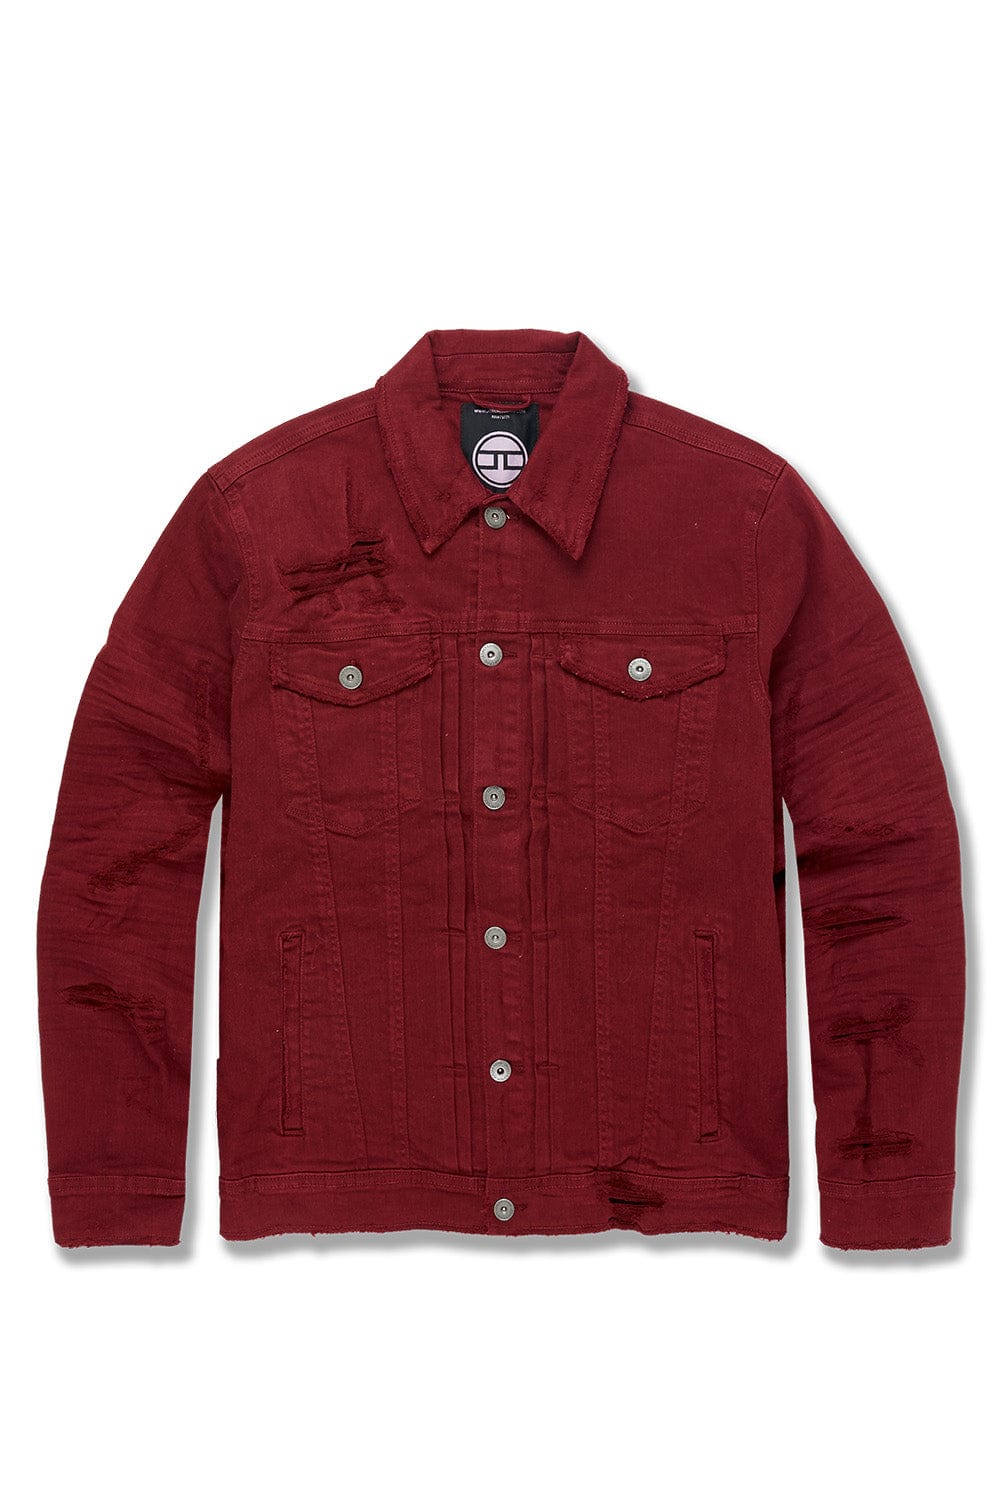 Jordan Craig Tribeca Twill Trucker Jacket (Exclusive Colors) Bordeaux / S